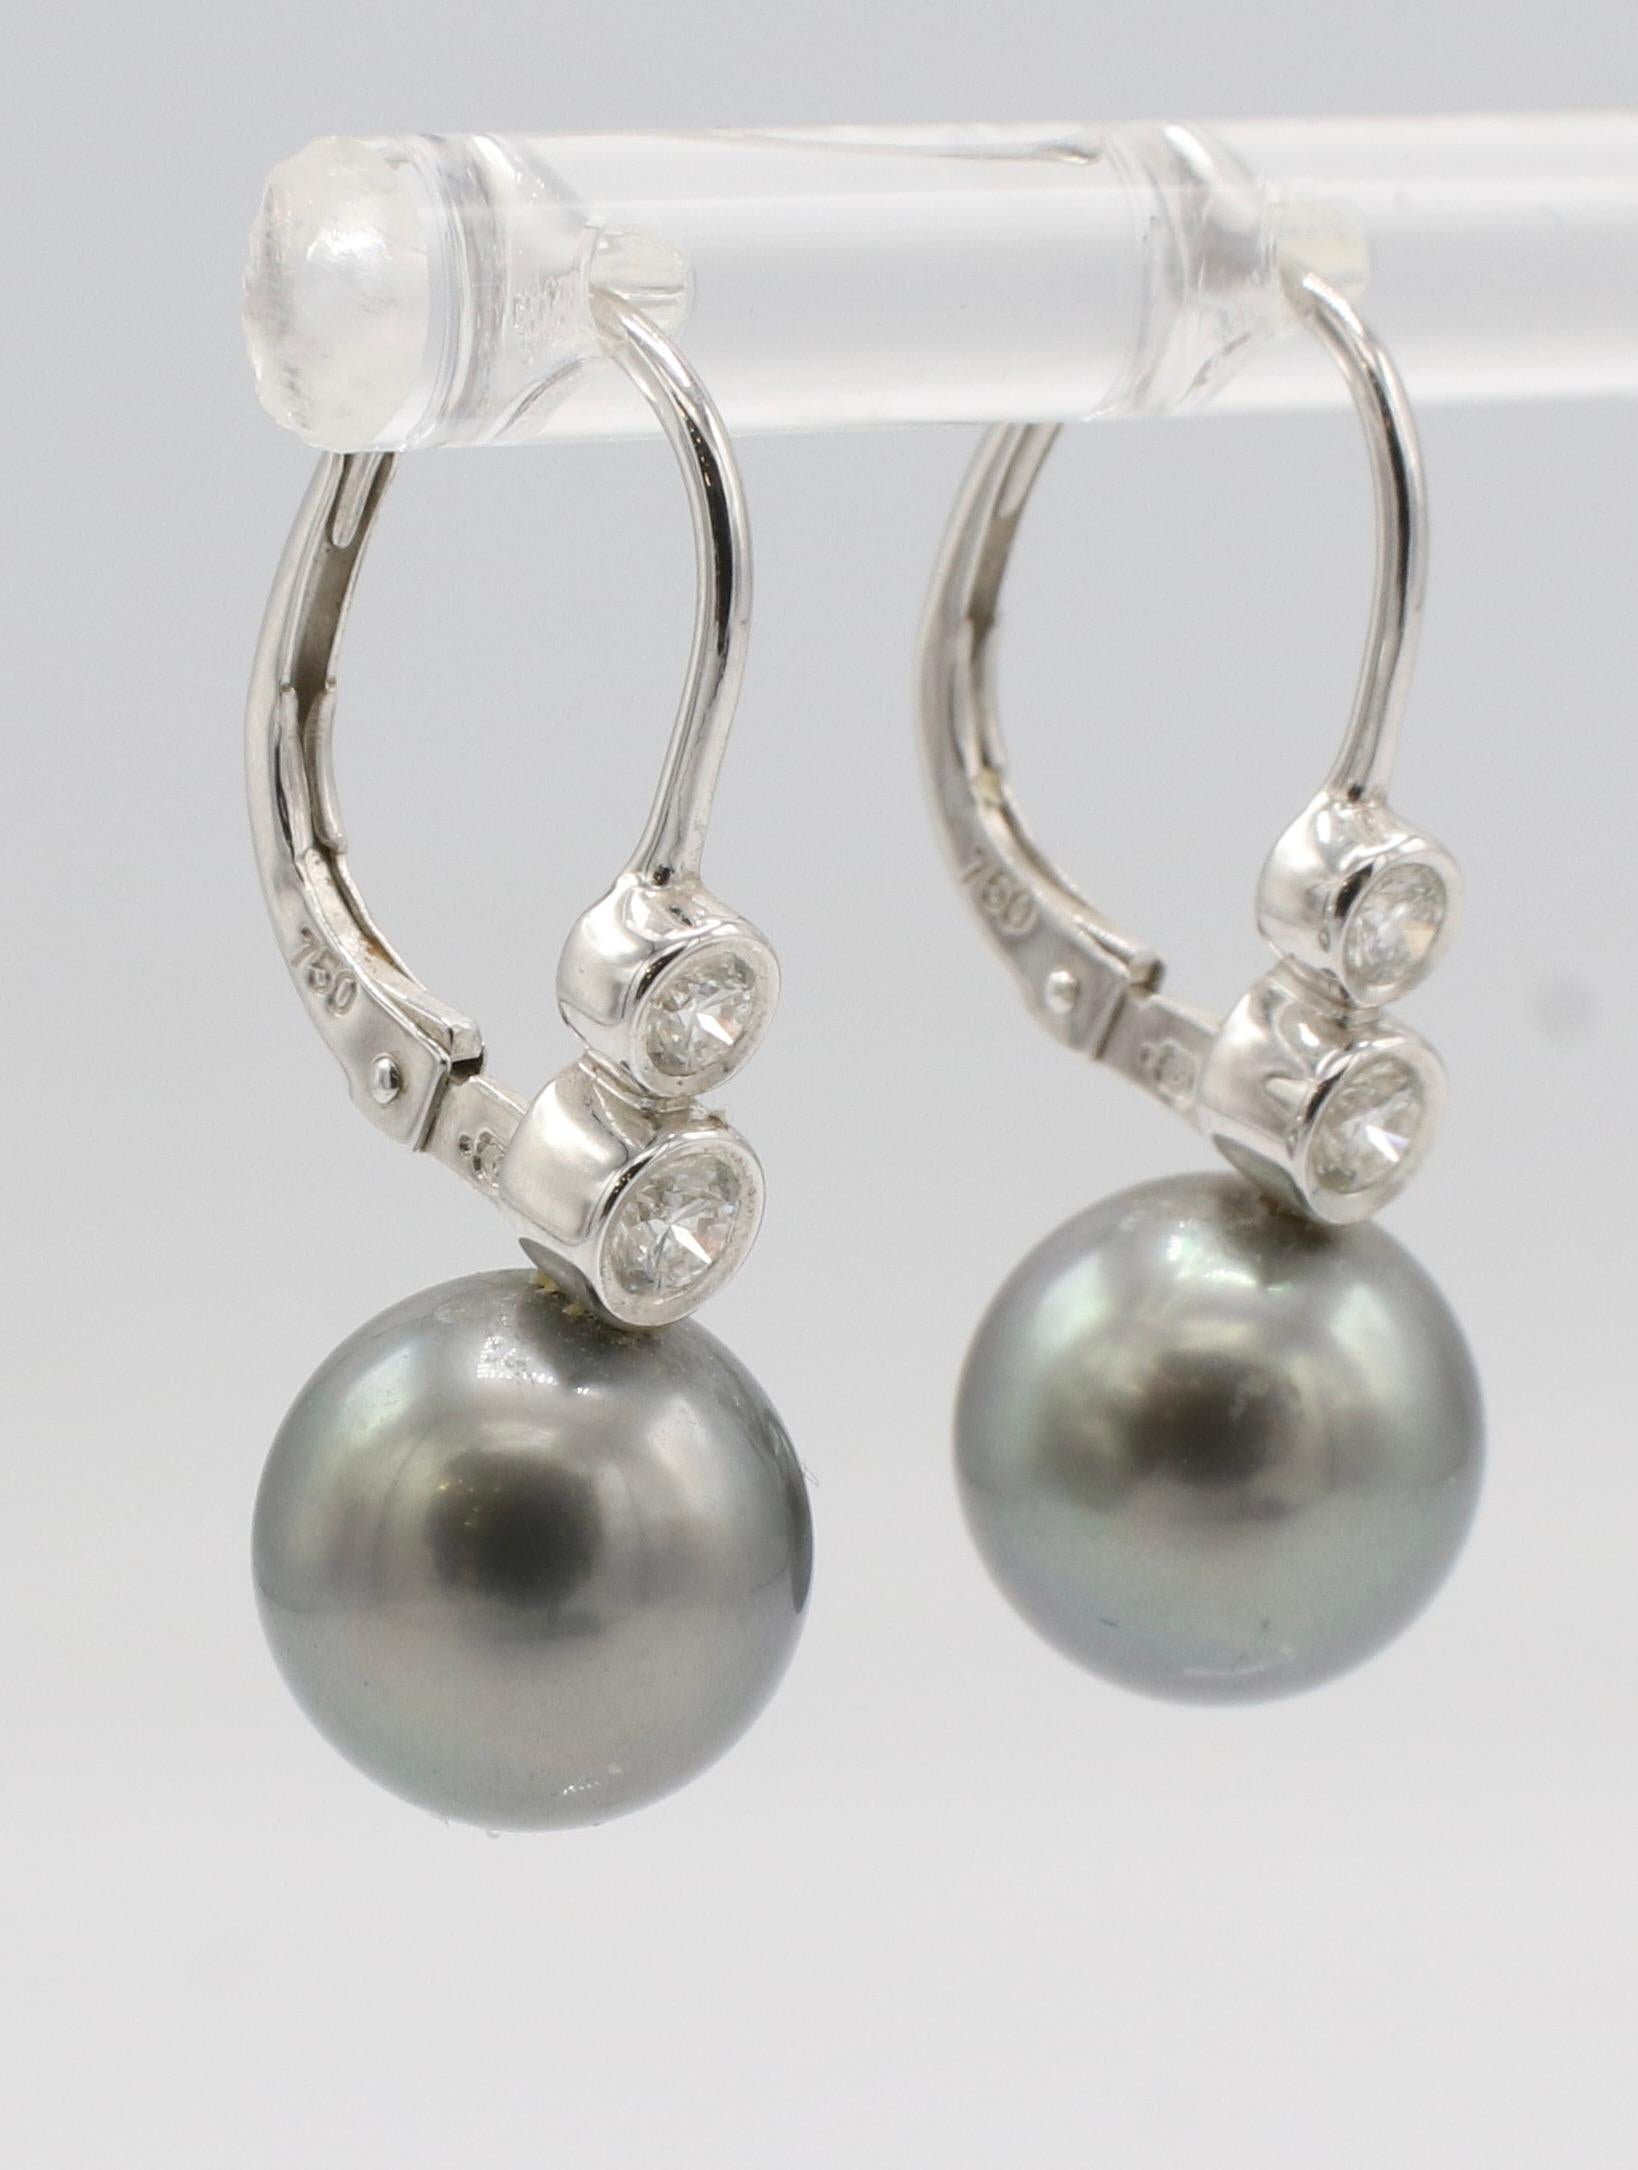 Moderne Mikimoto Pendants d'oreilles en or blanc 18 carats, perles noires des mers du Sud et diamants naturels